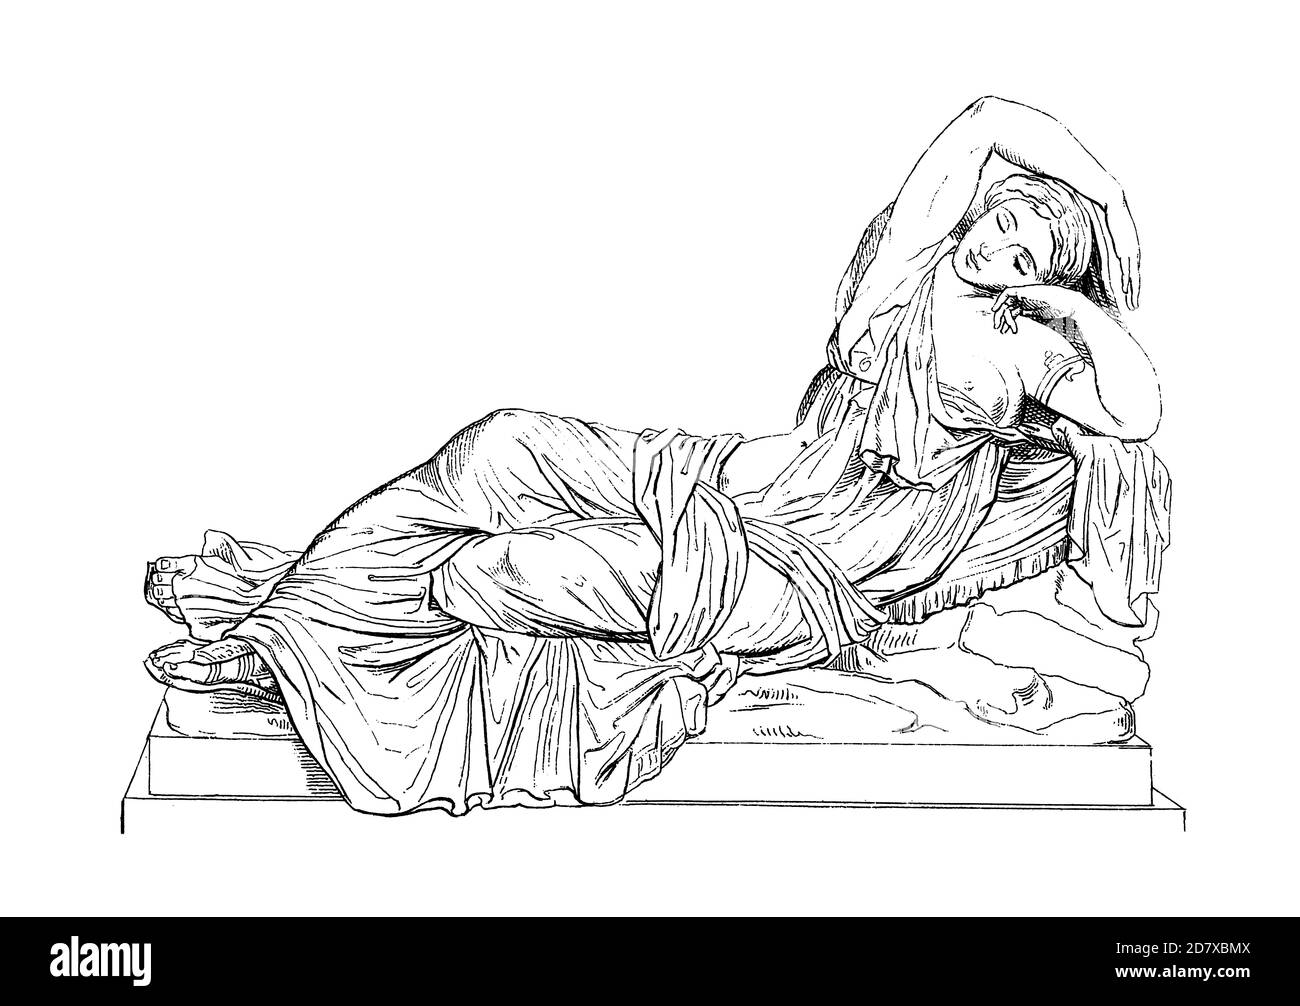 Ancienne gravure du XIXe siècle de l'Ariadne endormi. Illustration publiée dans Systematischer Bilder Atlas - Bauwesen, Ikonographische Encyklopedie de Banque D'Images